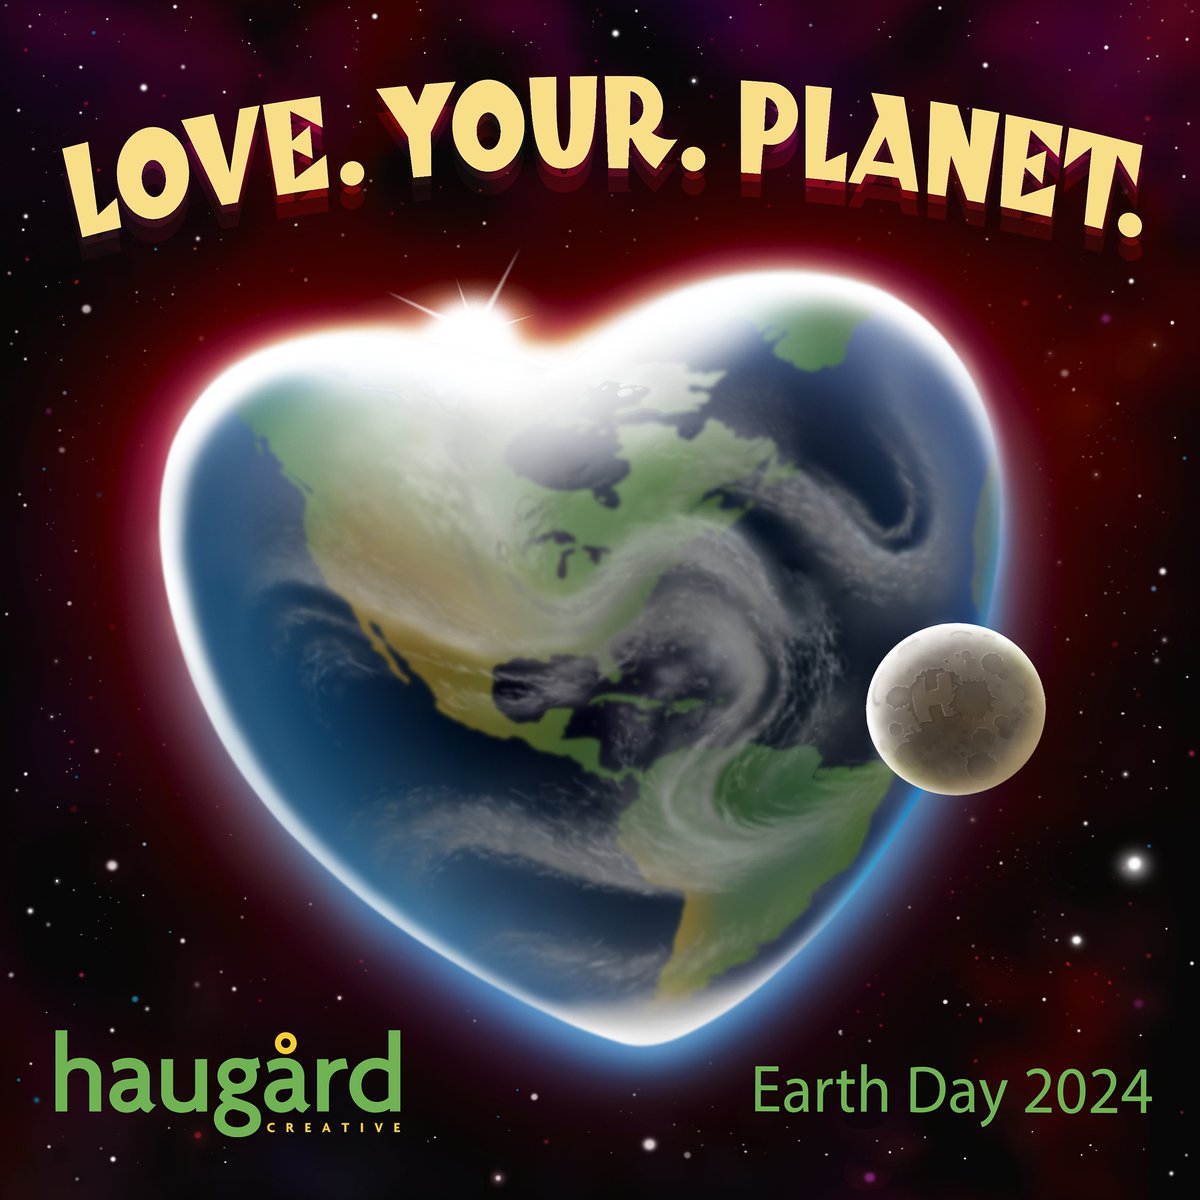 We ♥️ Earth #happyearthday #earthday2024 #chicago #packagedesign #packagedesignagency #chicagodesignagency